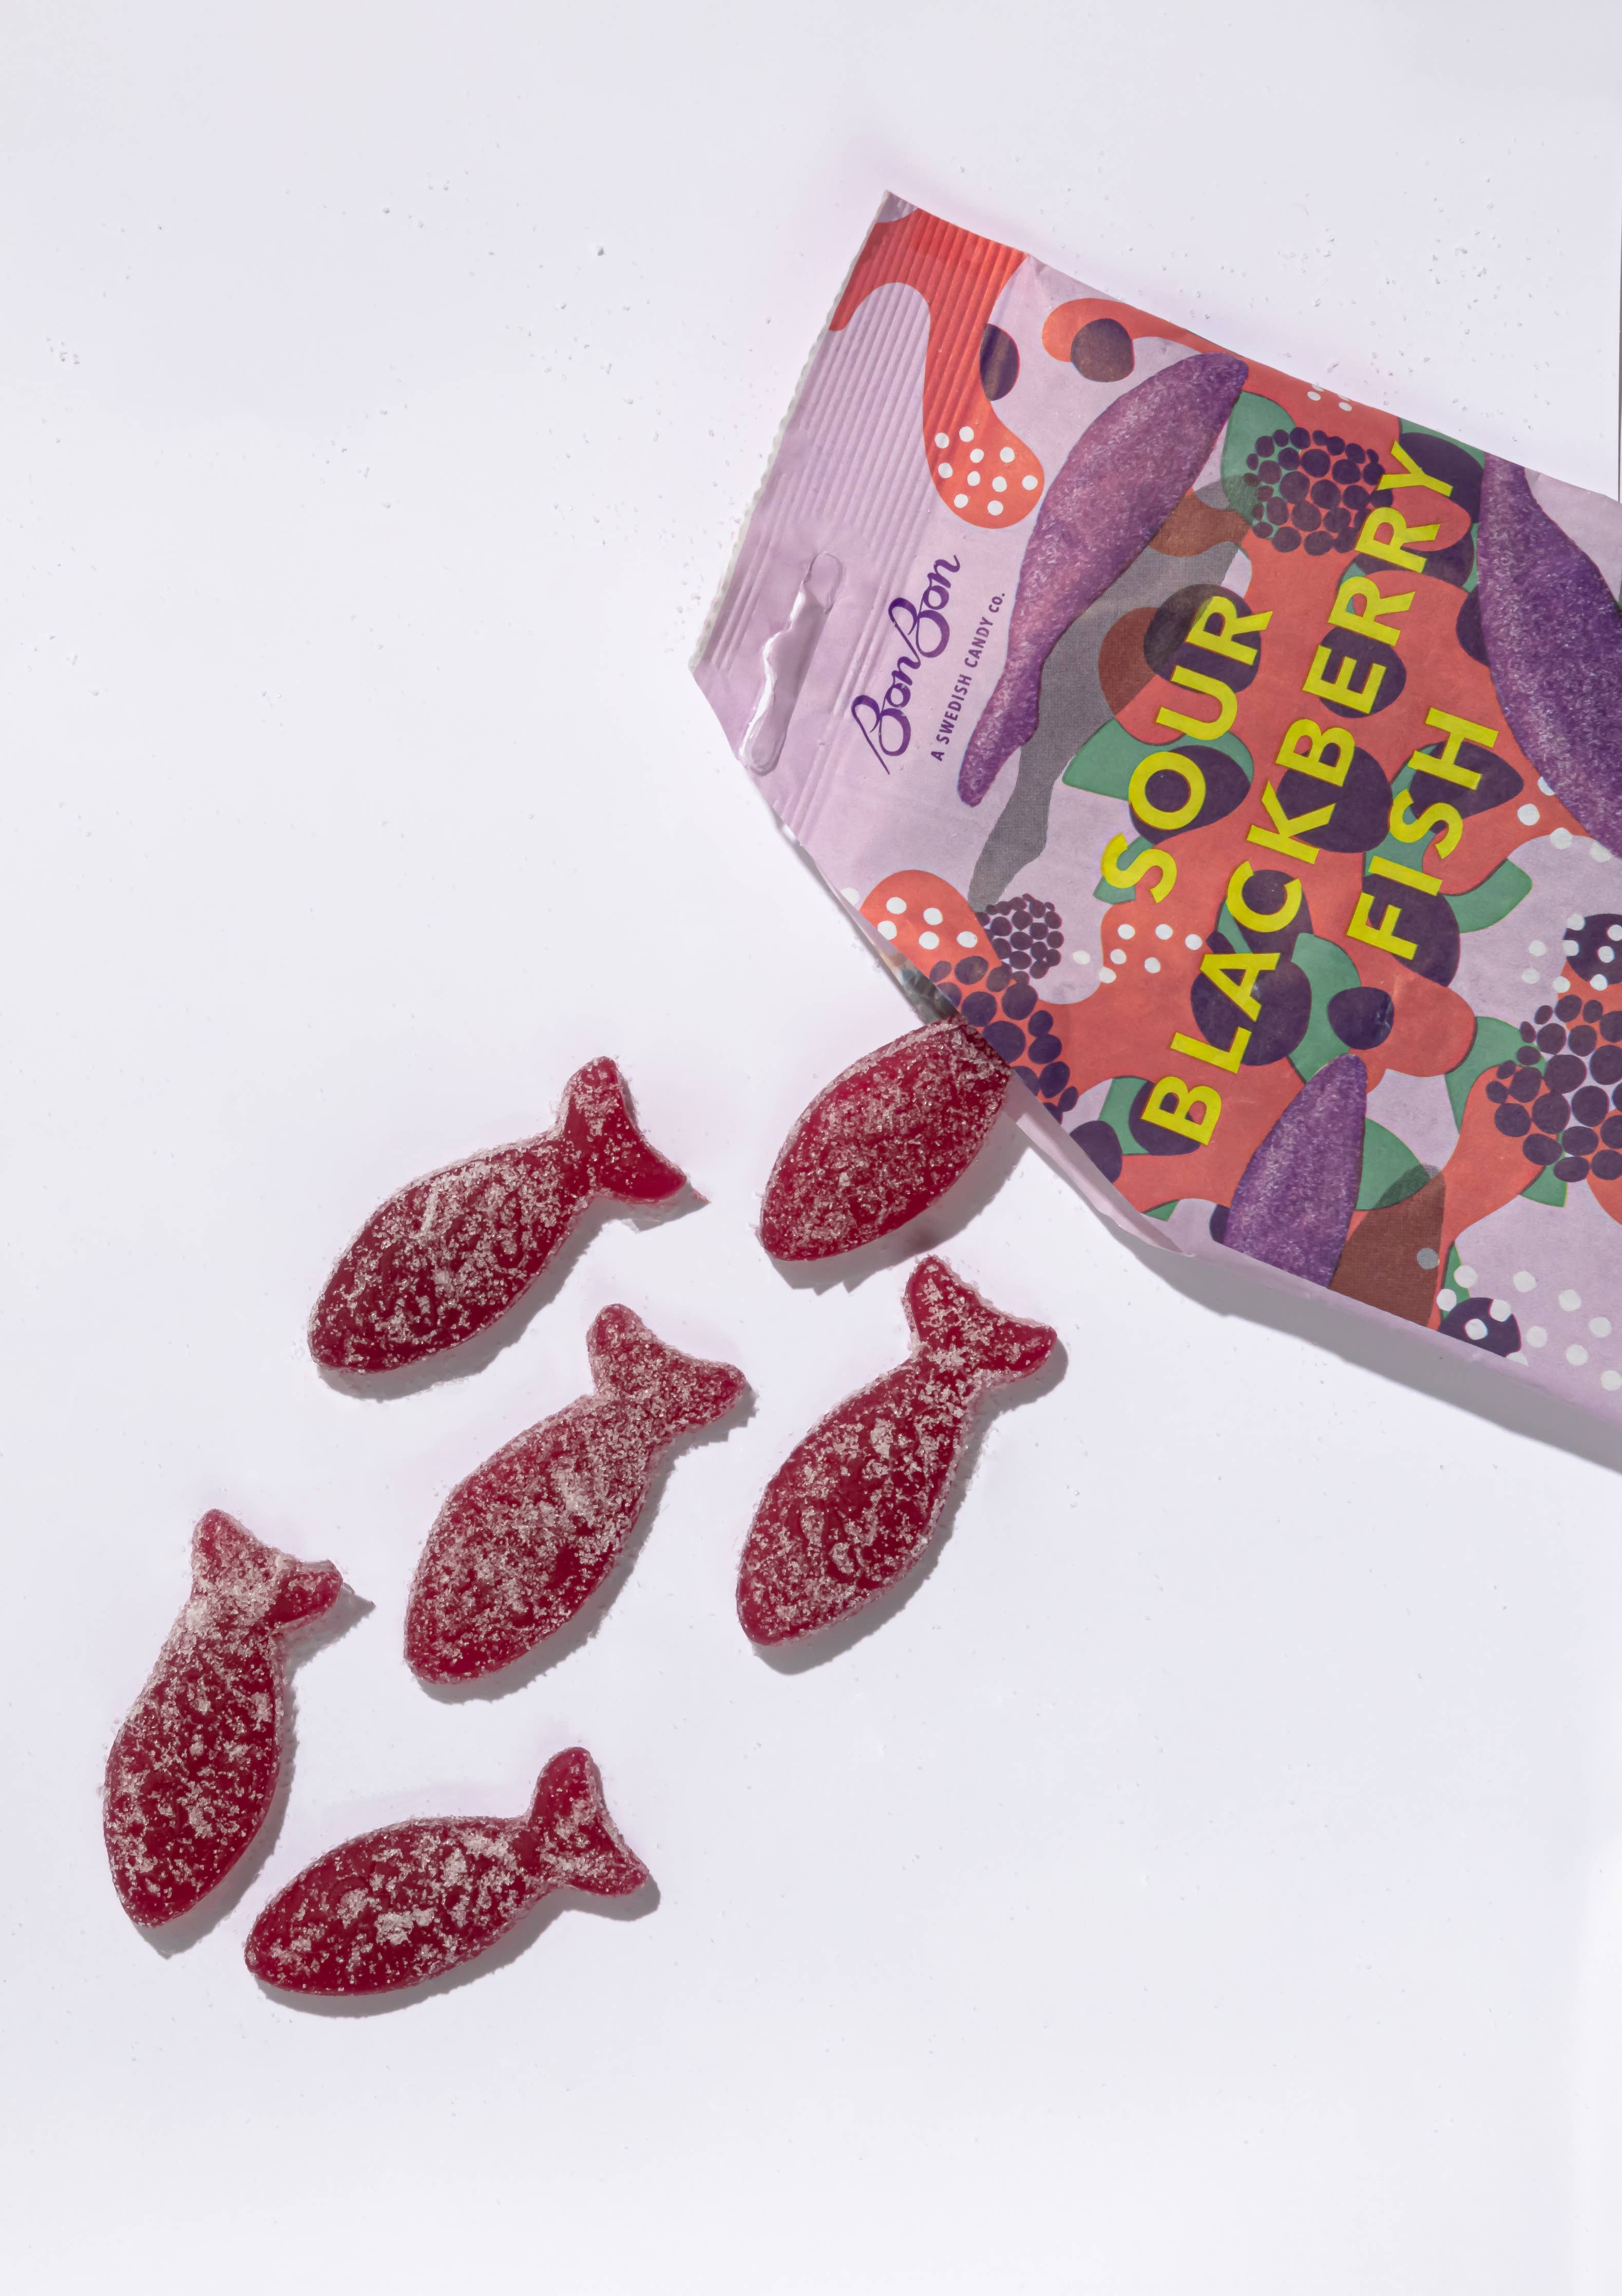 Candy: Bon Bon - Sour Blackberry Fish (150g)